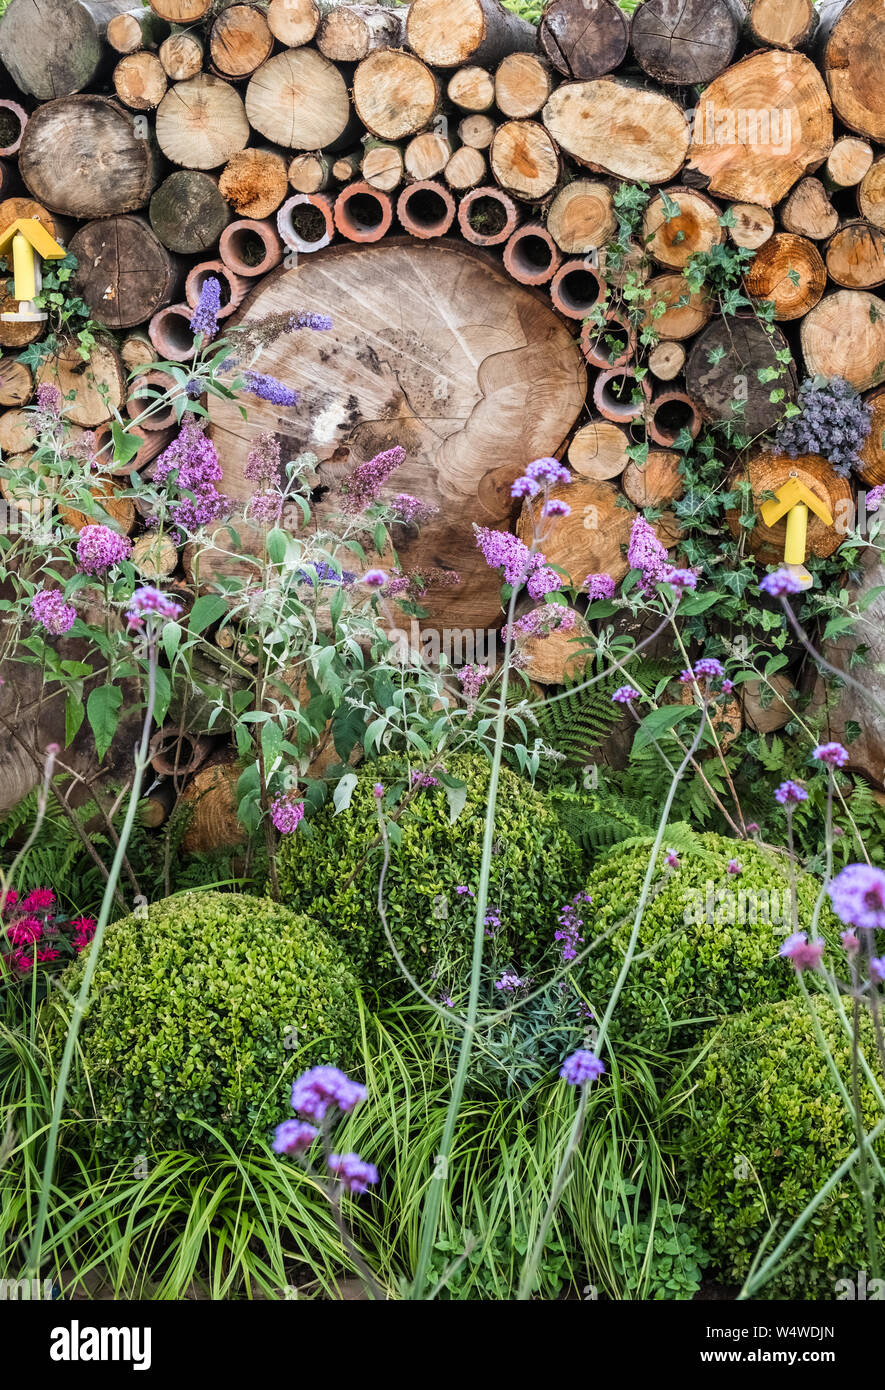 Voir Jardin de Tatton Park Flower Show, 2019, l'intégration de fonctionnalités telles que l'amicale de la faune des troncs et des cannes de bambou pour les insectes, Cheshire, Royaume-Uni Banque D'Images